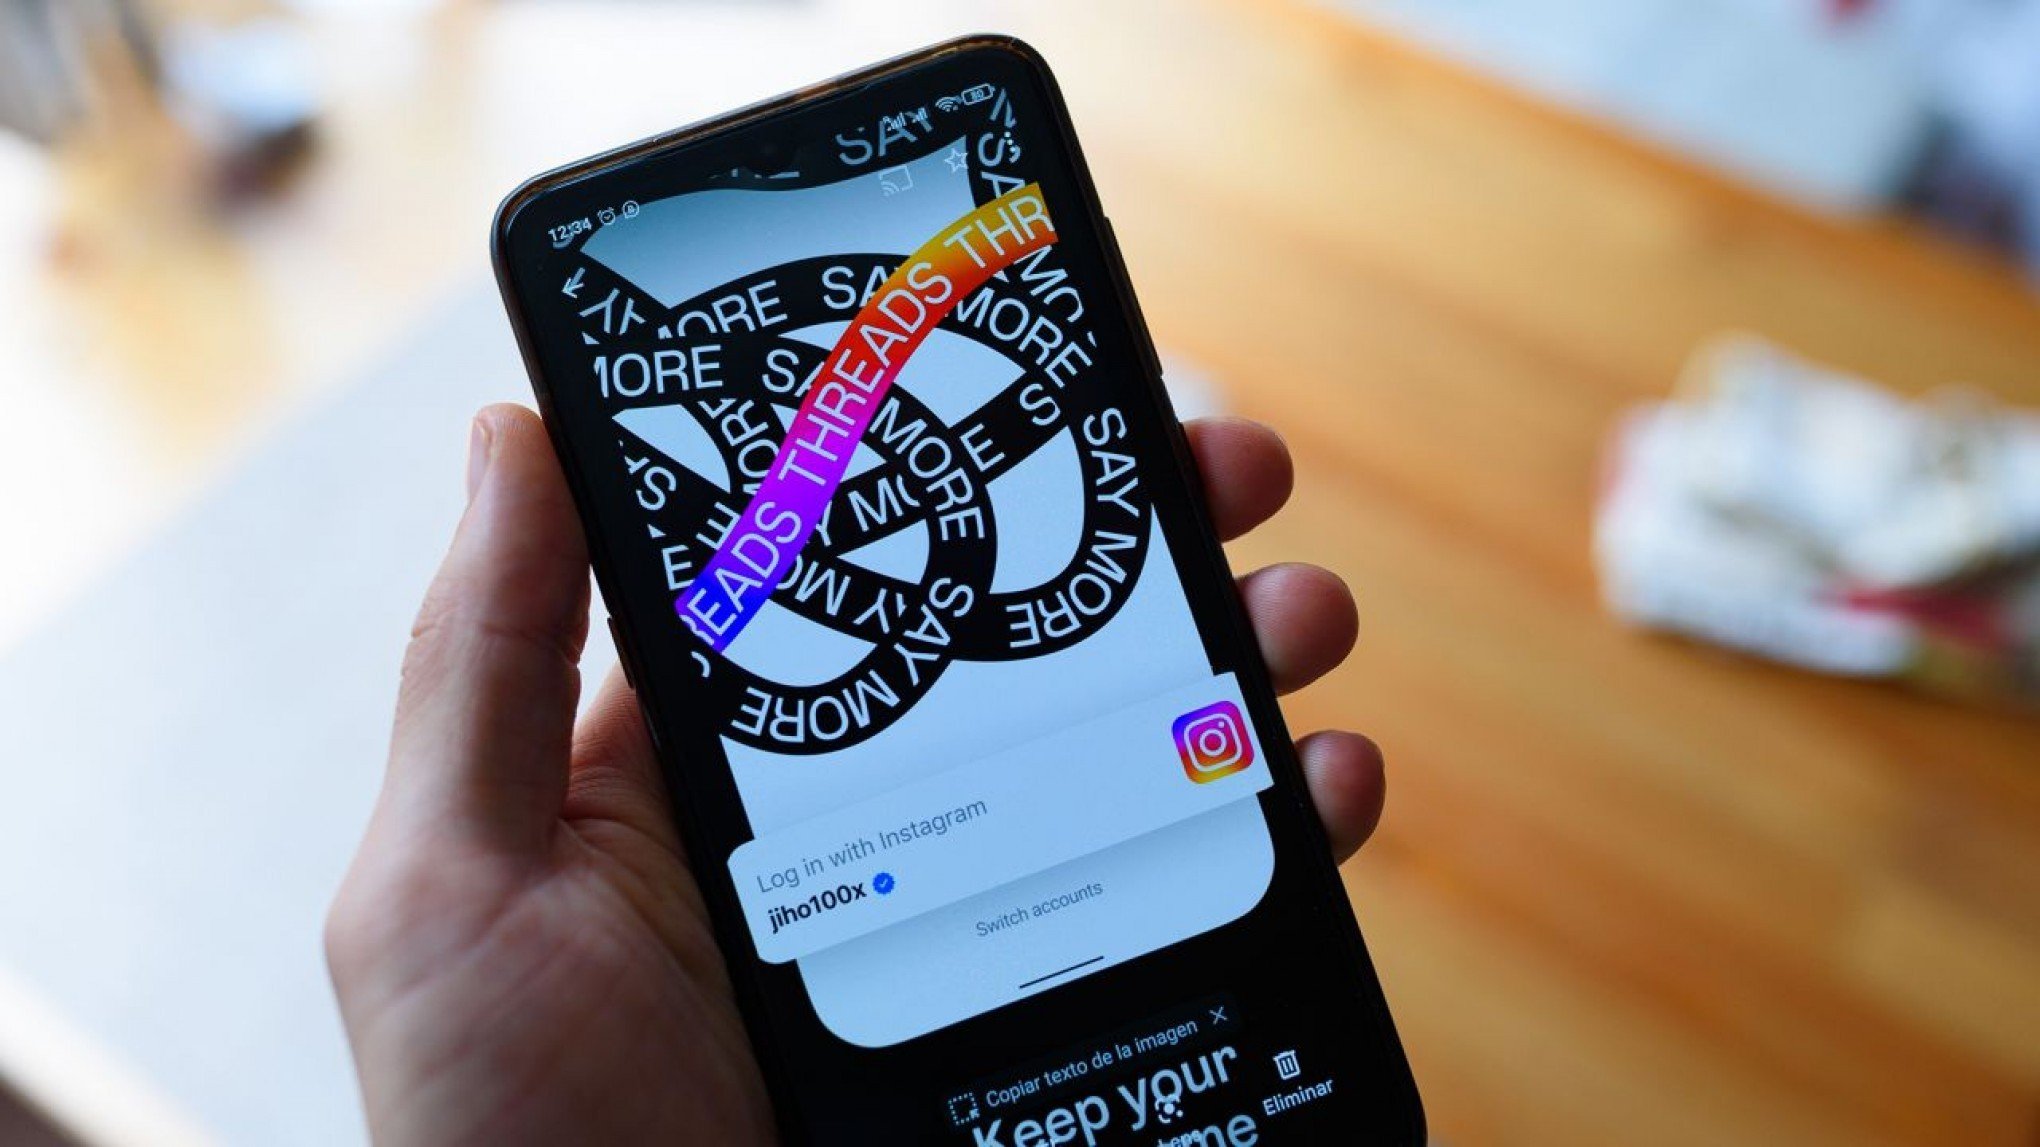 Threads: o que significa o nome da nova rede do Instagram?